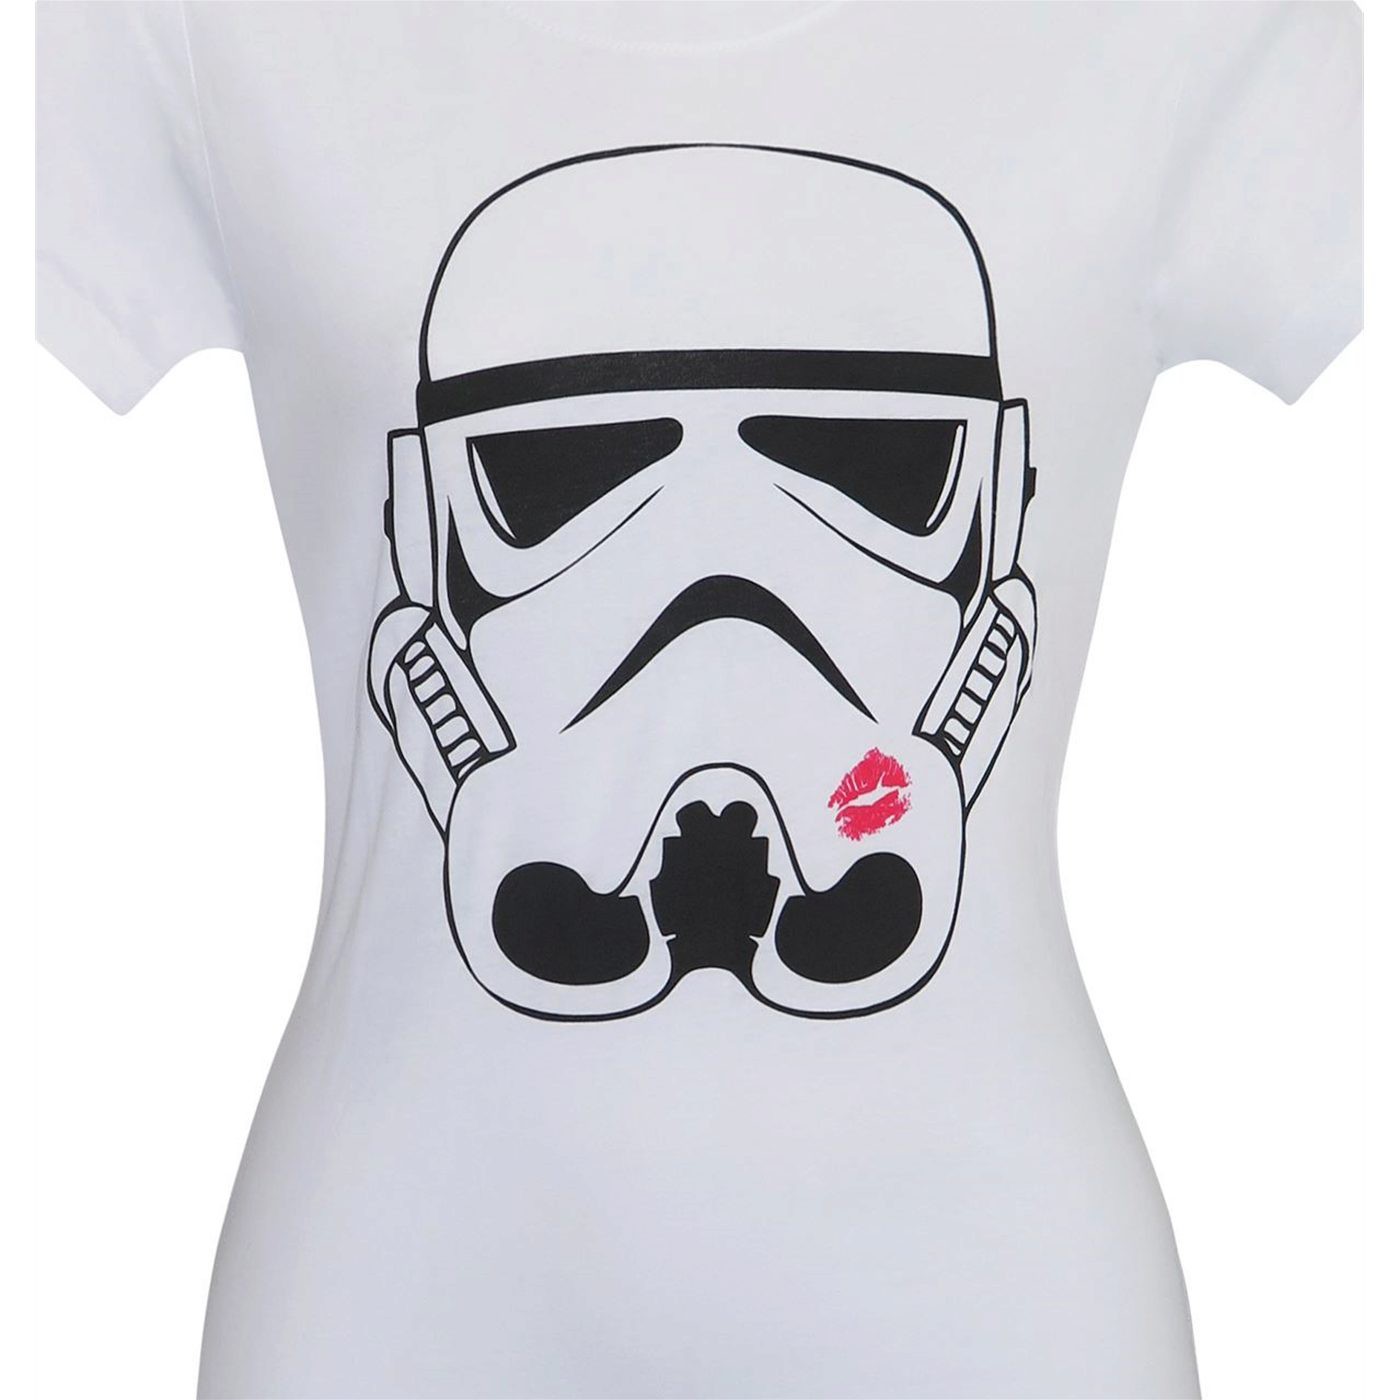 Stormtrooper Kiss Women's T-Shirt